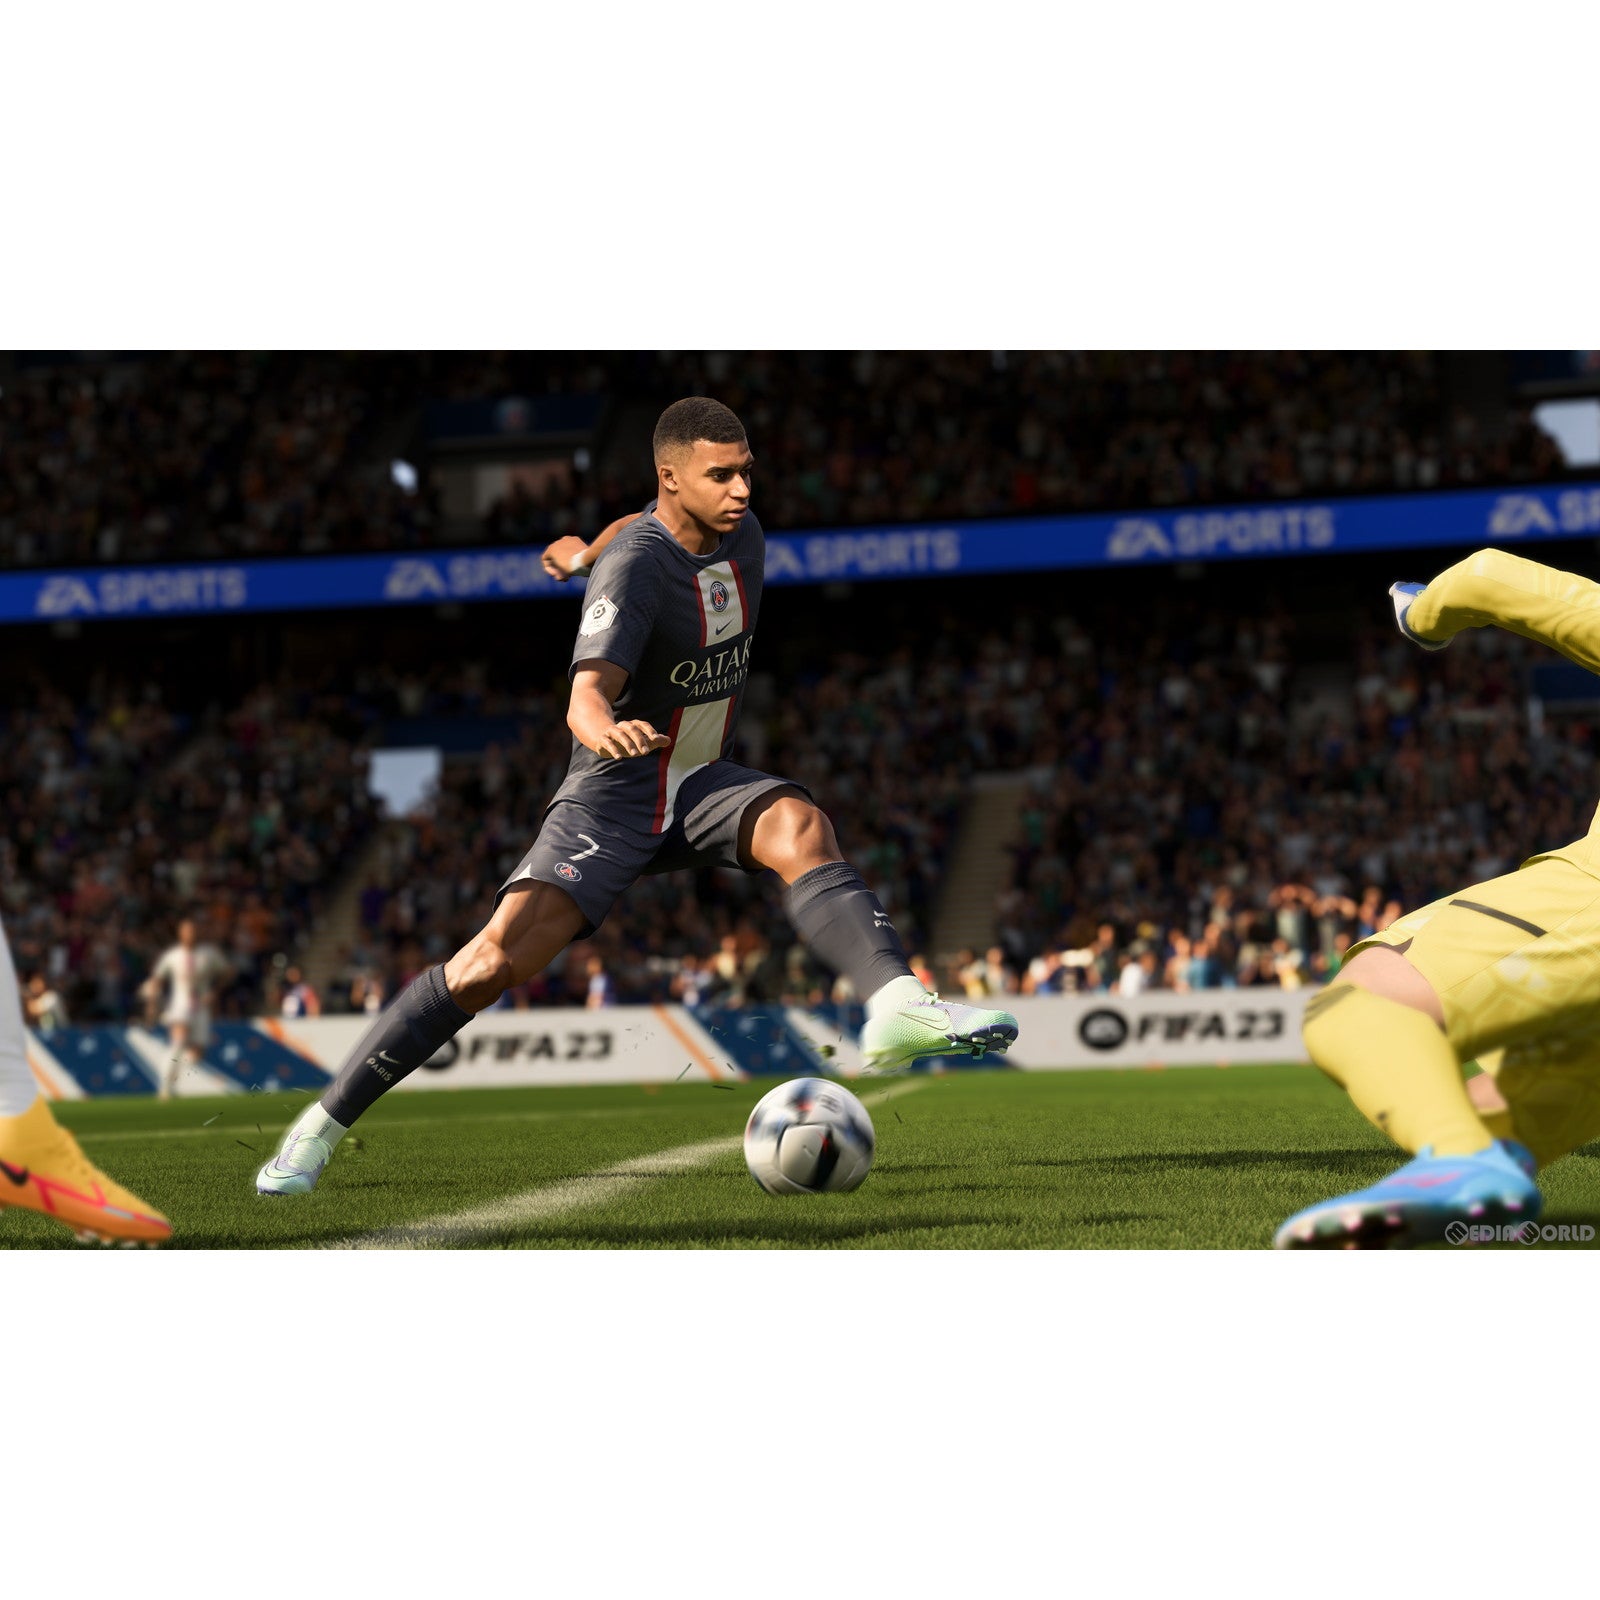 【中古即納】[PS5]FIFA 23(20220930)